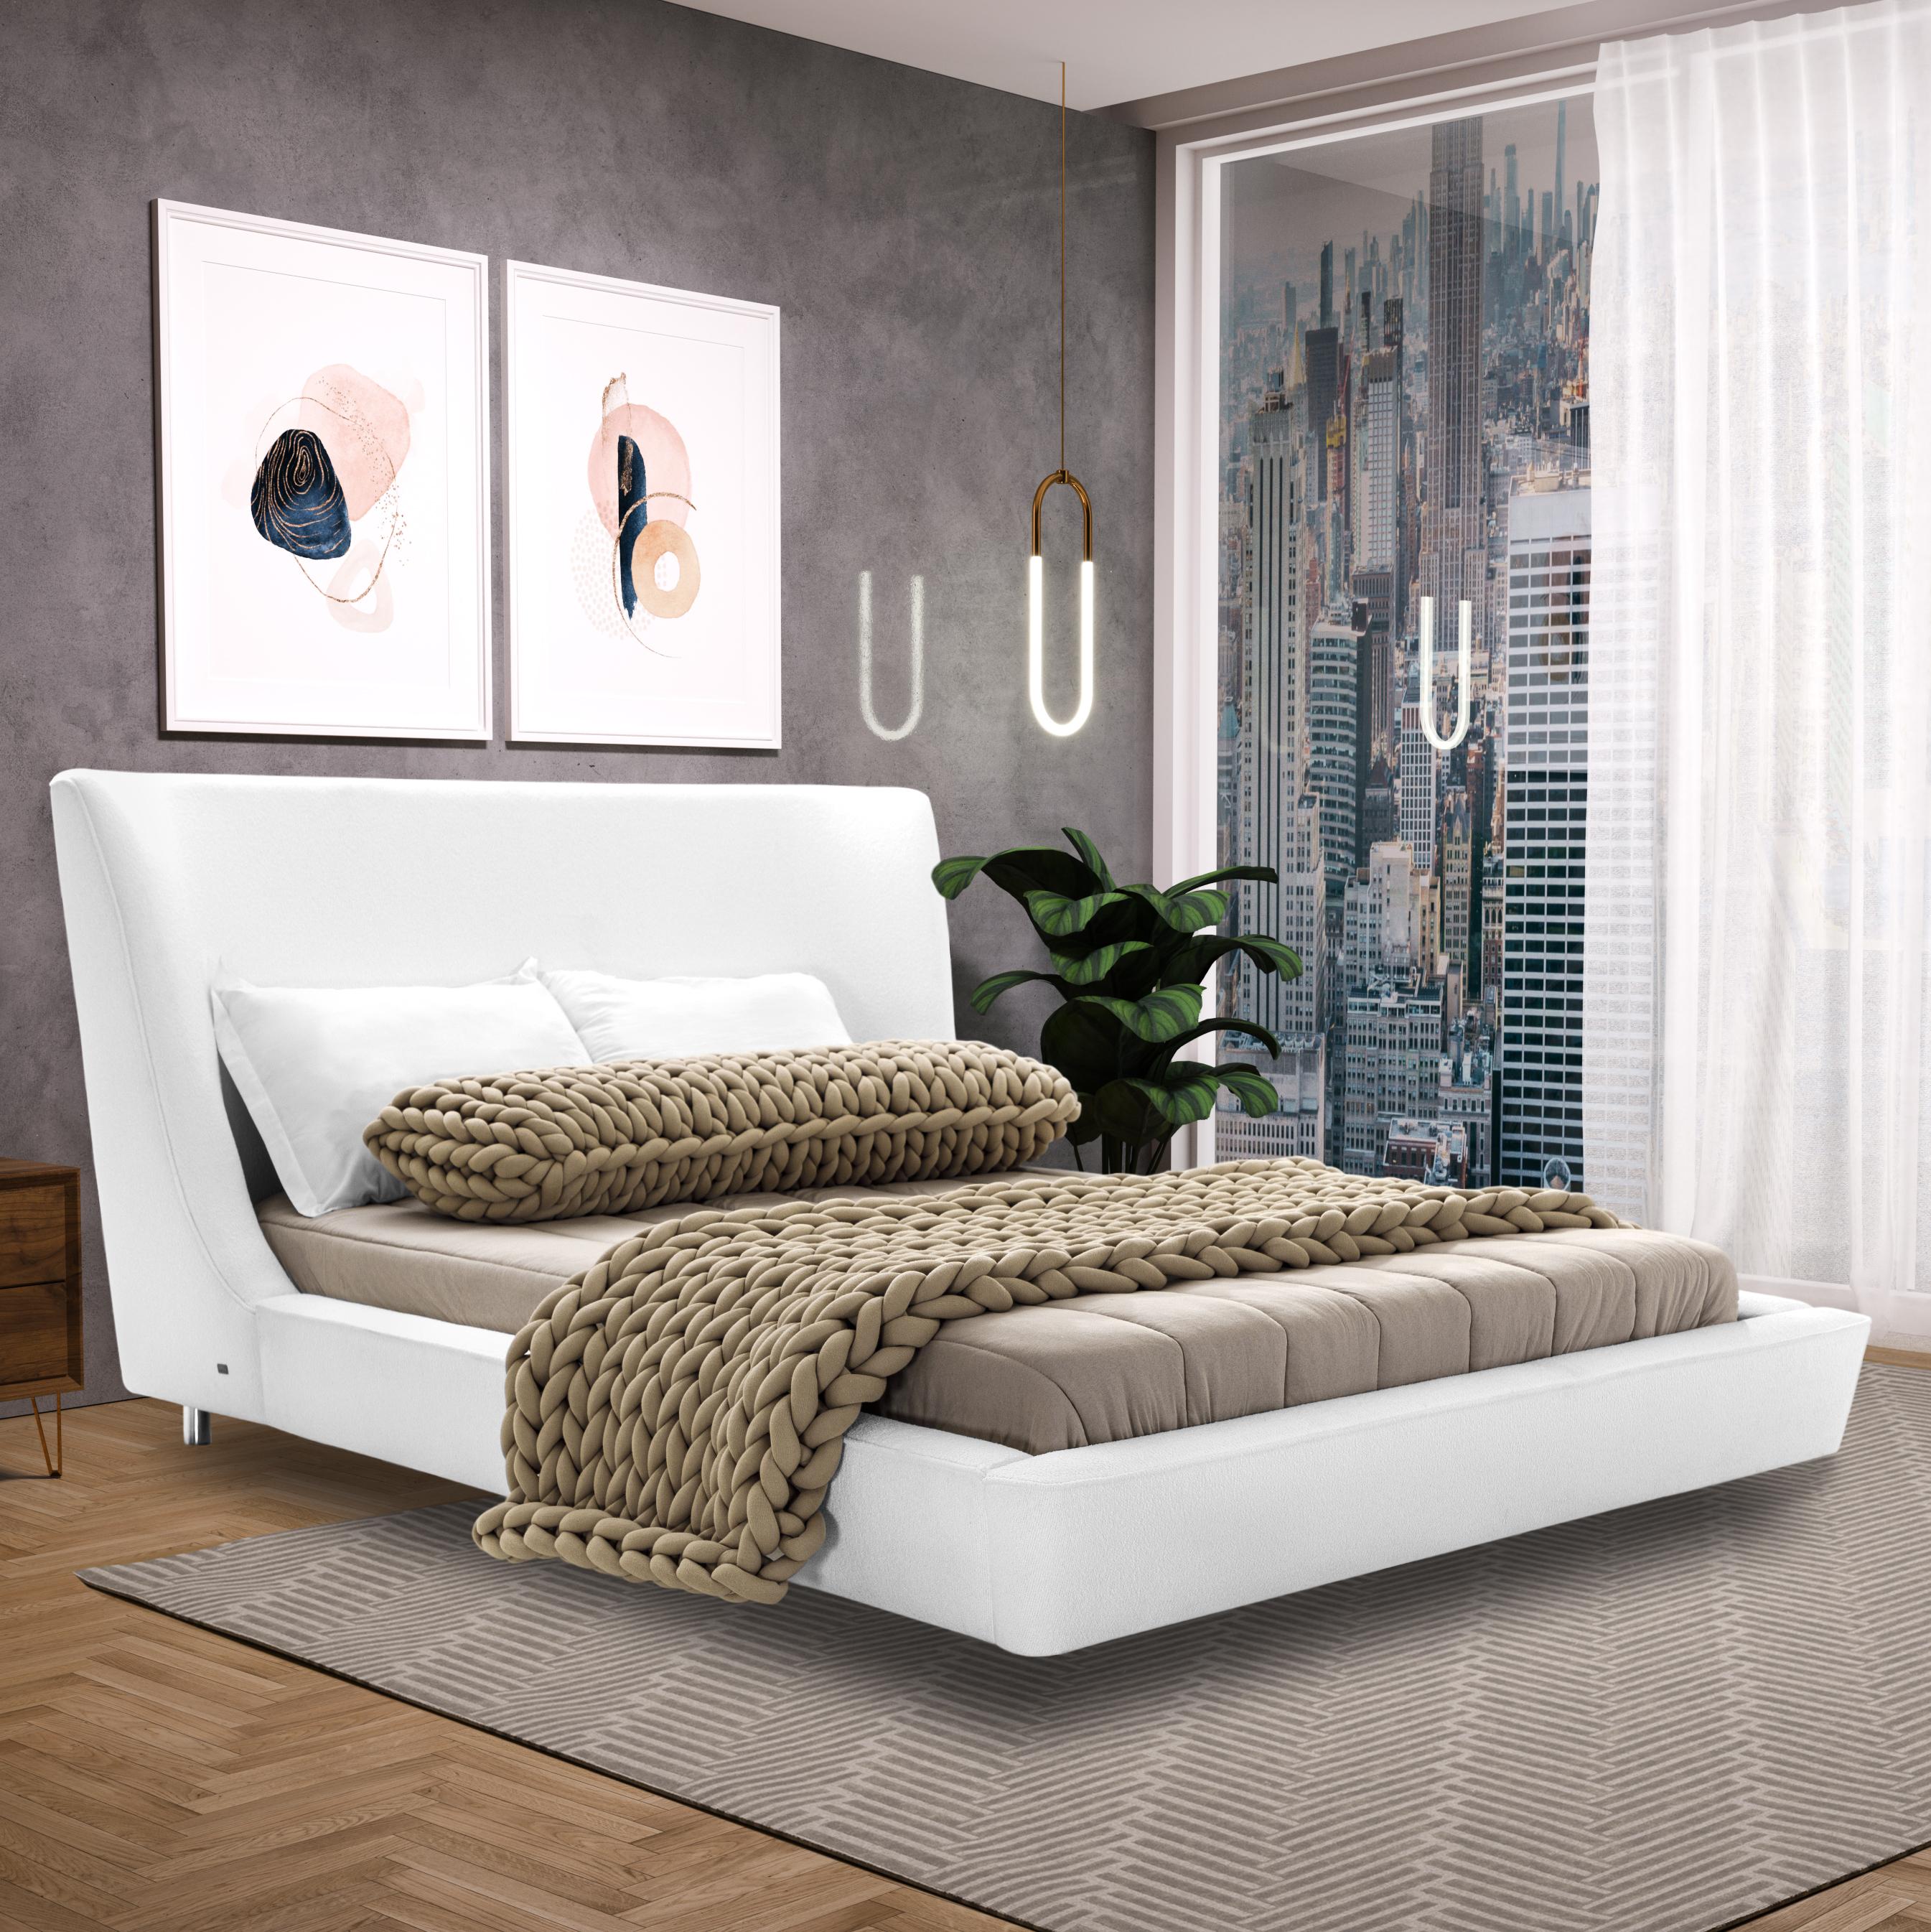 Les incroyables designers de l'équipe Uultis ont fabriqué ce magnifique lit queen Musa dans un tissu blanc avec une forme de coquillage en guise de tête de lit qui est soutenue par un cadre angulaire, recouvert de mousse et de tissu. Il s'agit d'un